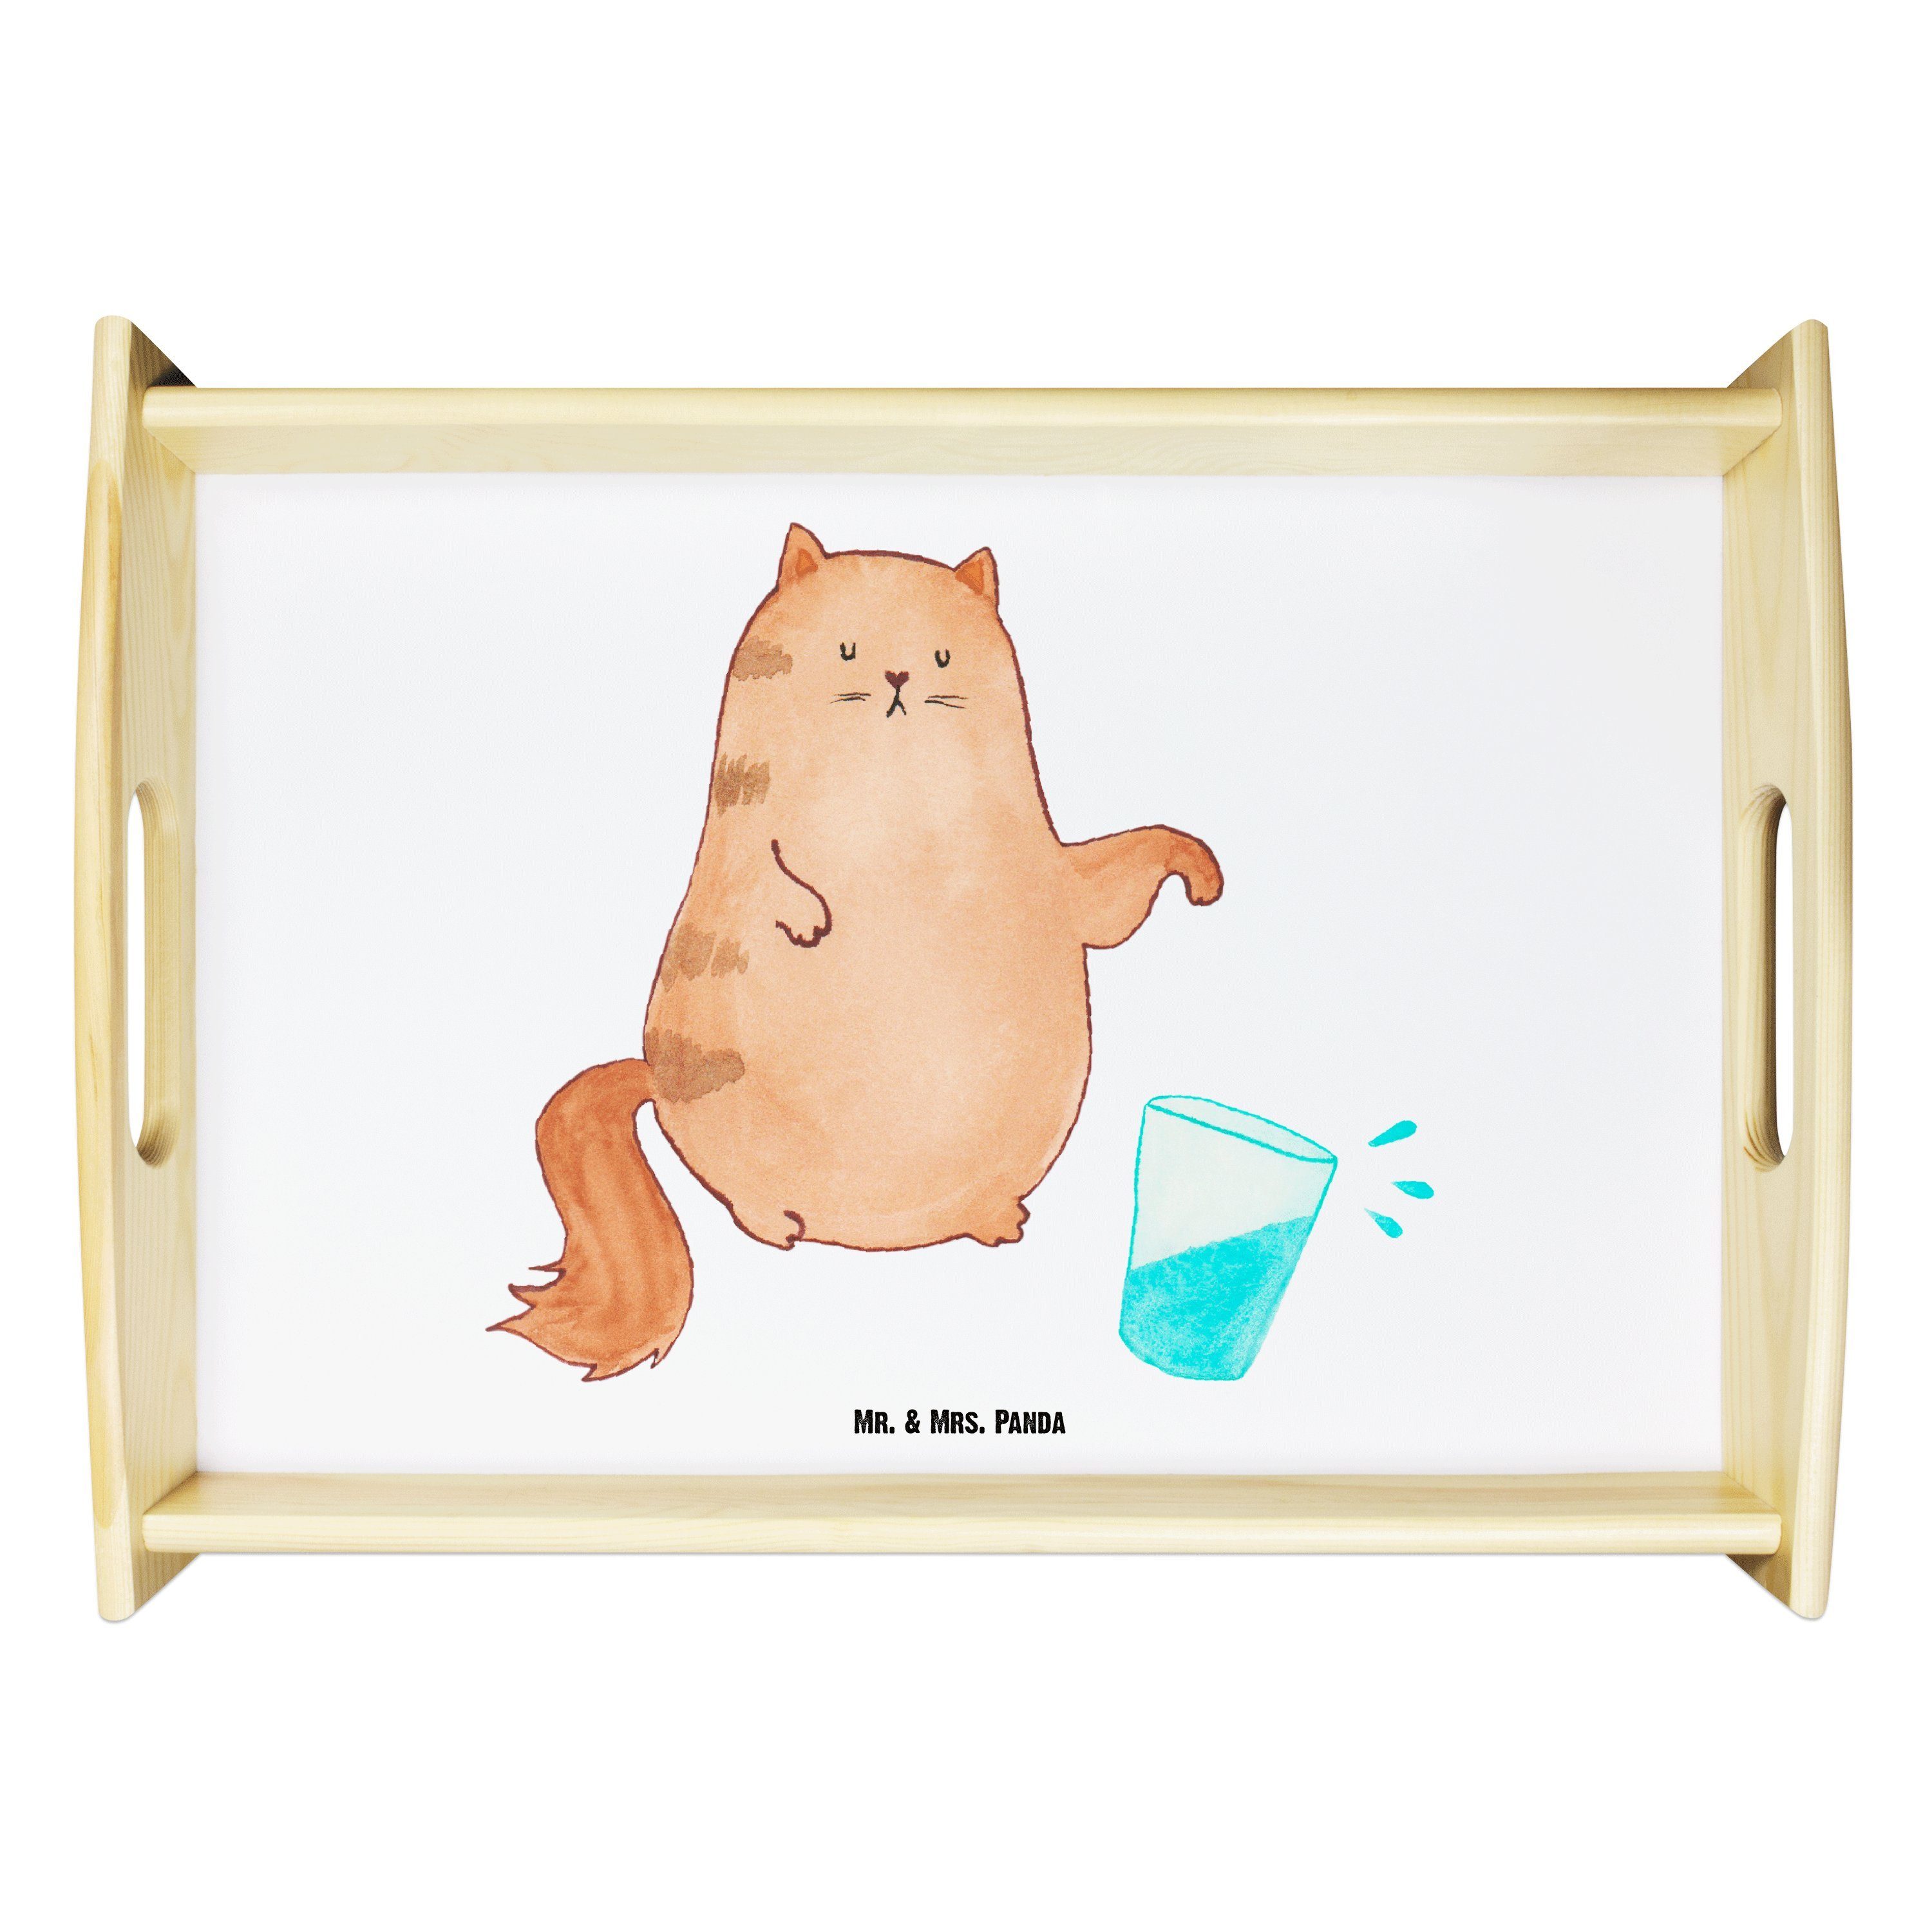 Mr. & Mrs. Panda Tablett Katze Wasserglas - Weiß - Geschenk, Katzenmotive, Kater, Katzenprodu, Echtholz lasiert, (1-tlg)